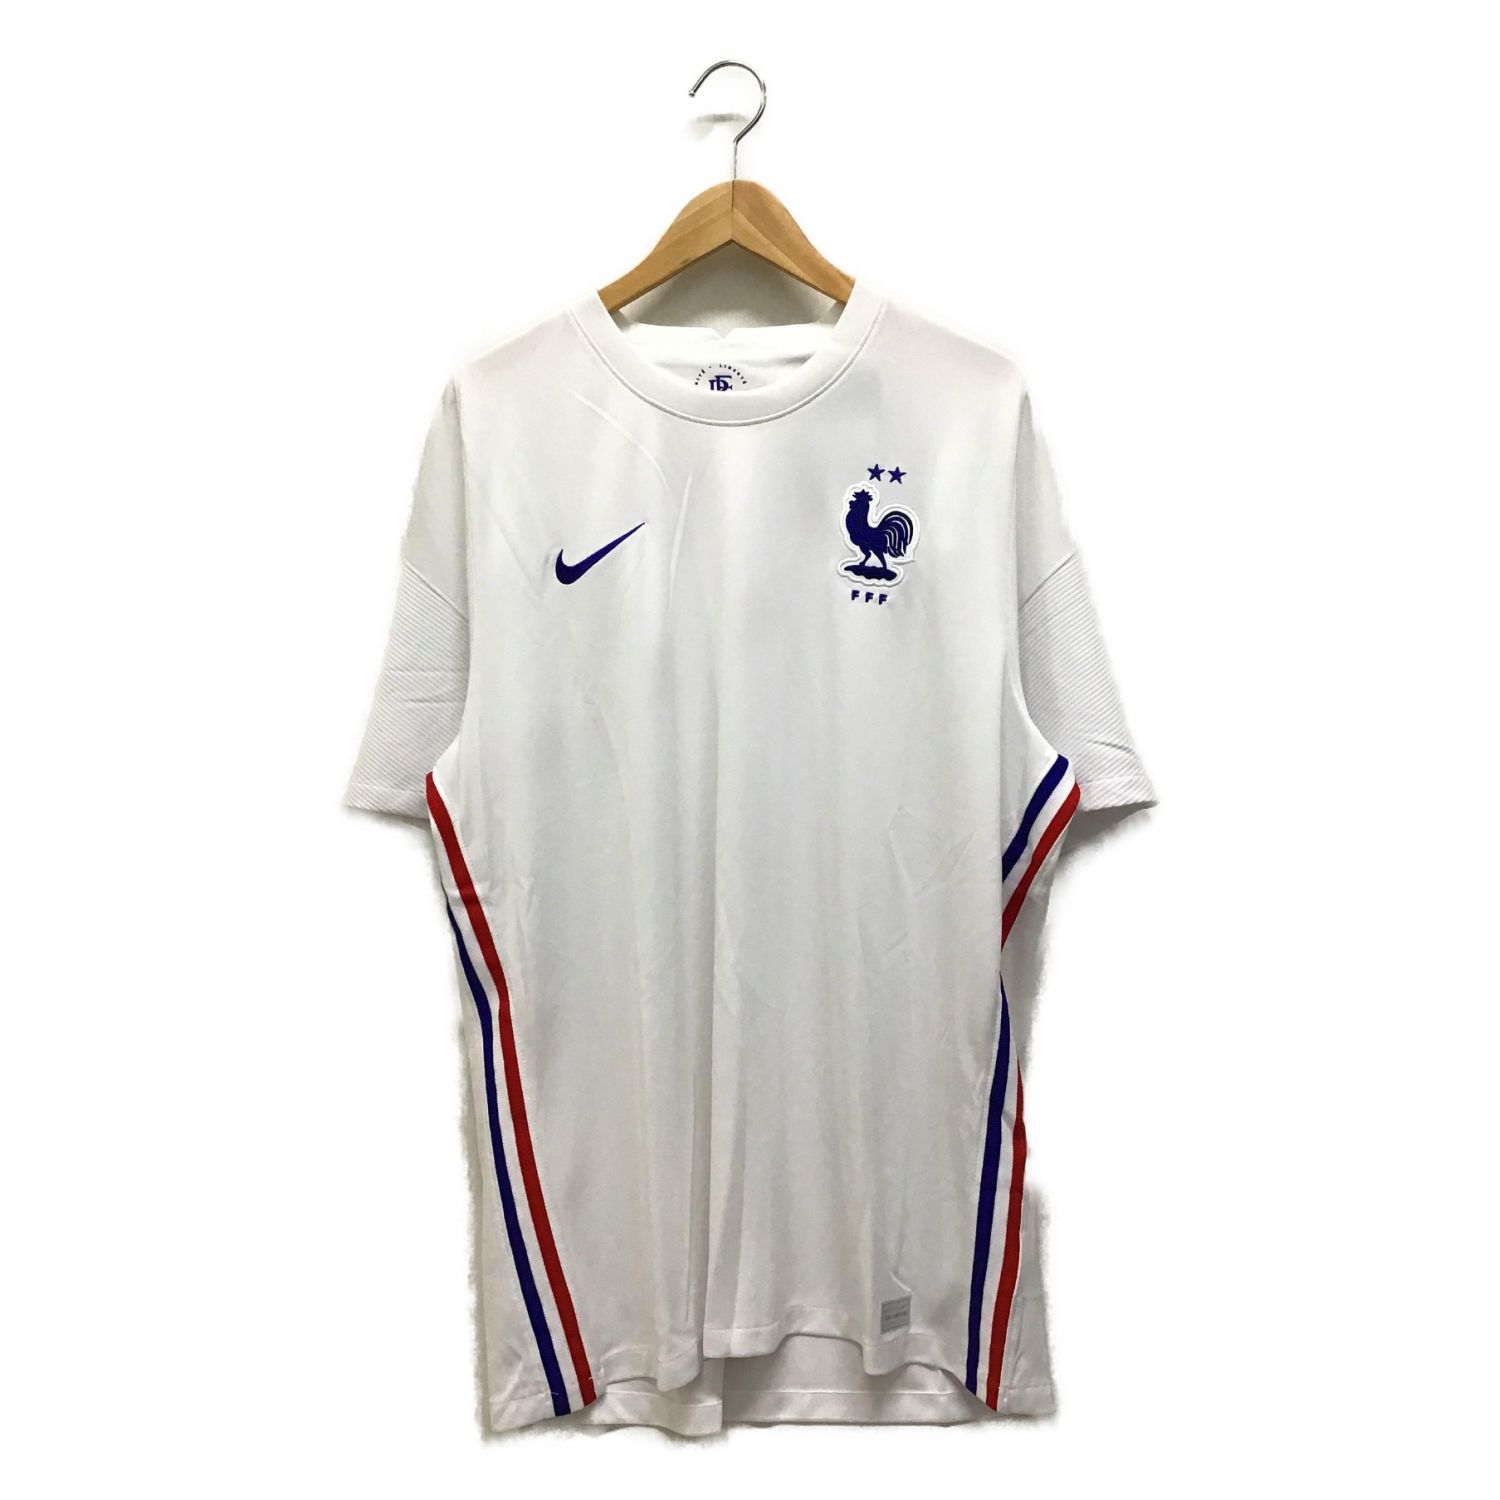 Nike ナイキ サッカーユニフォーム メンズ Size Xl ホワイト フランス代表 Cd 100 トレファクonline